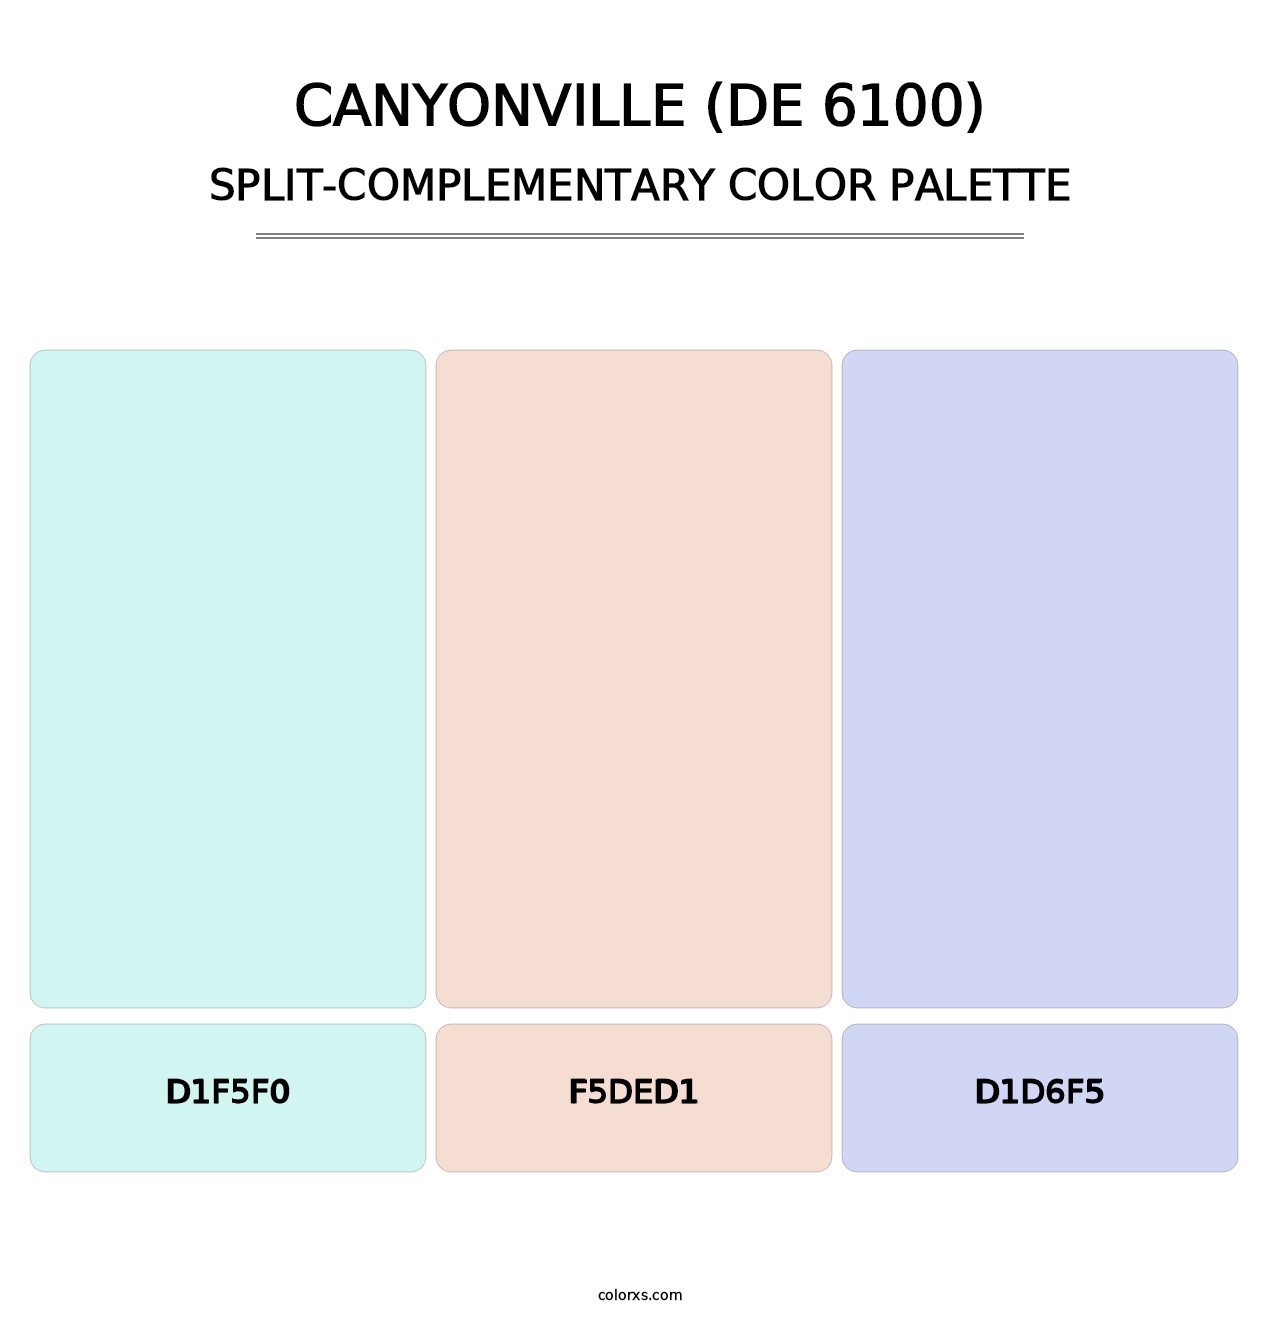 Canyonville (DE 6100) - Split-Complementary Color Palette